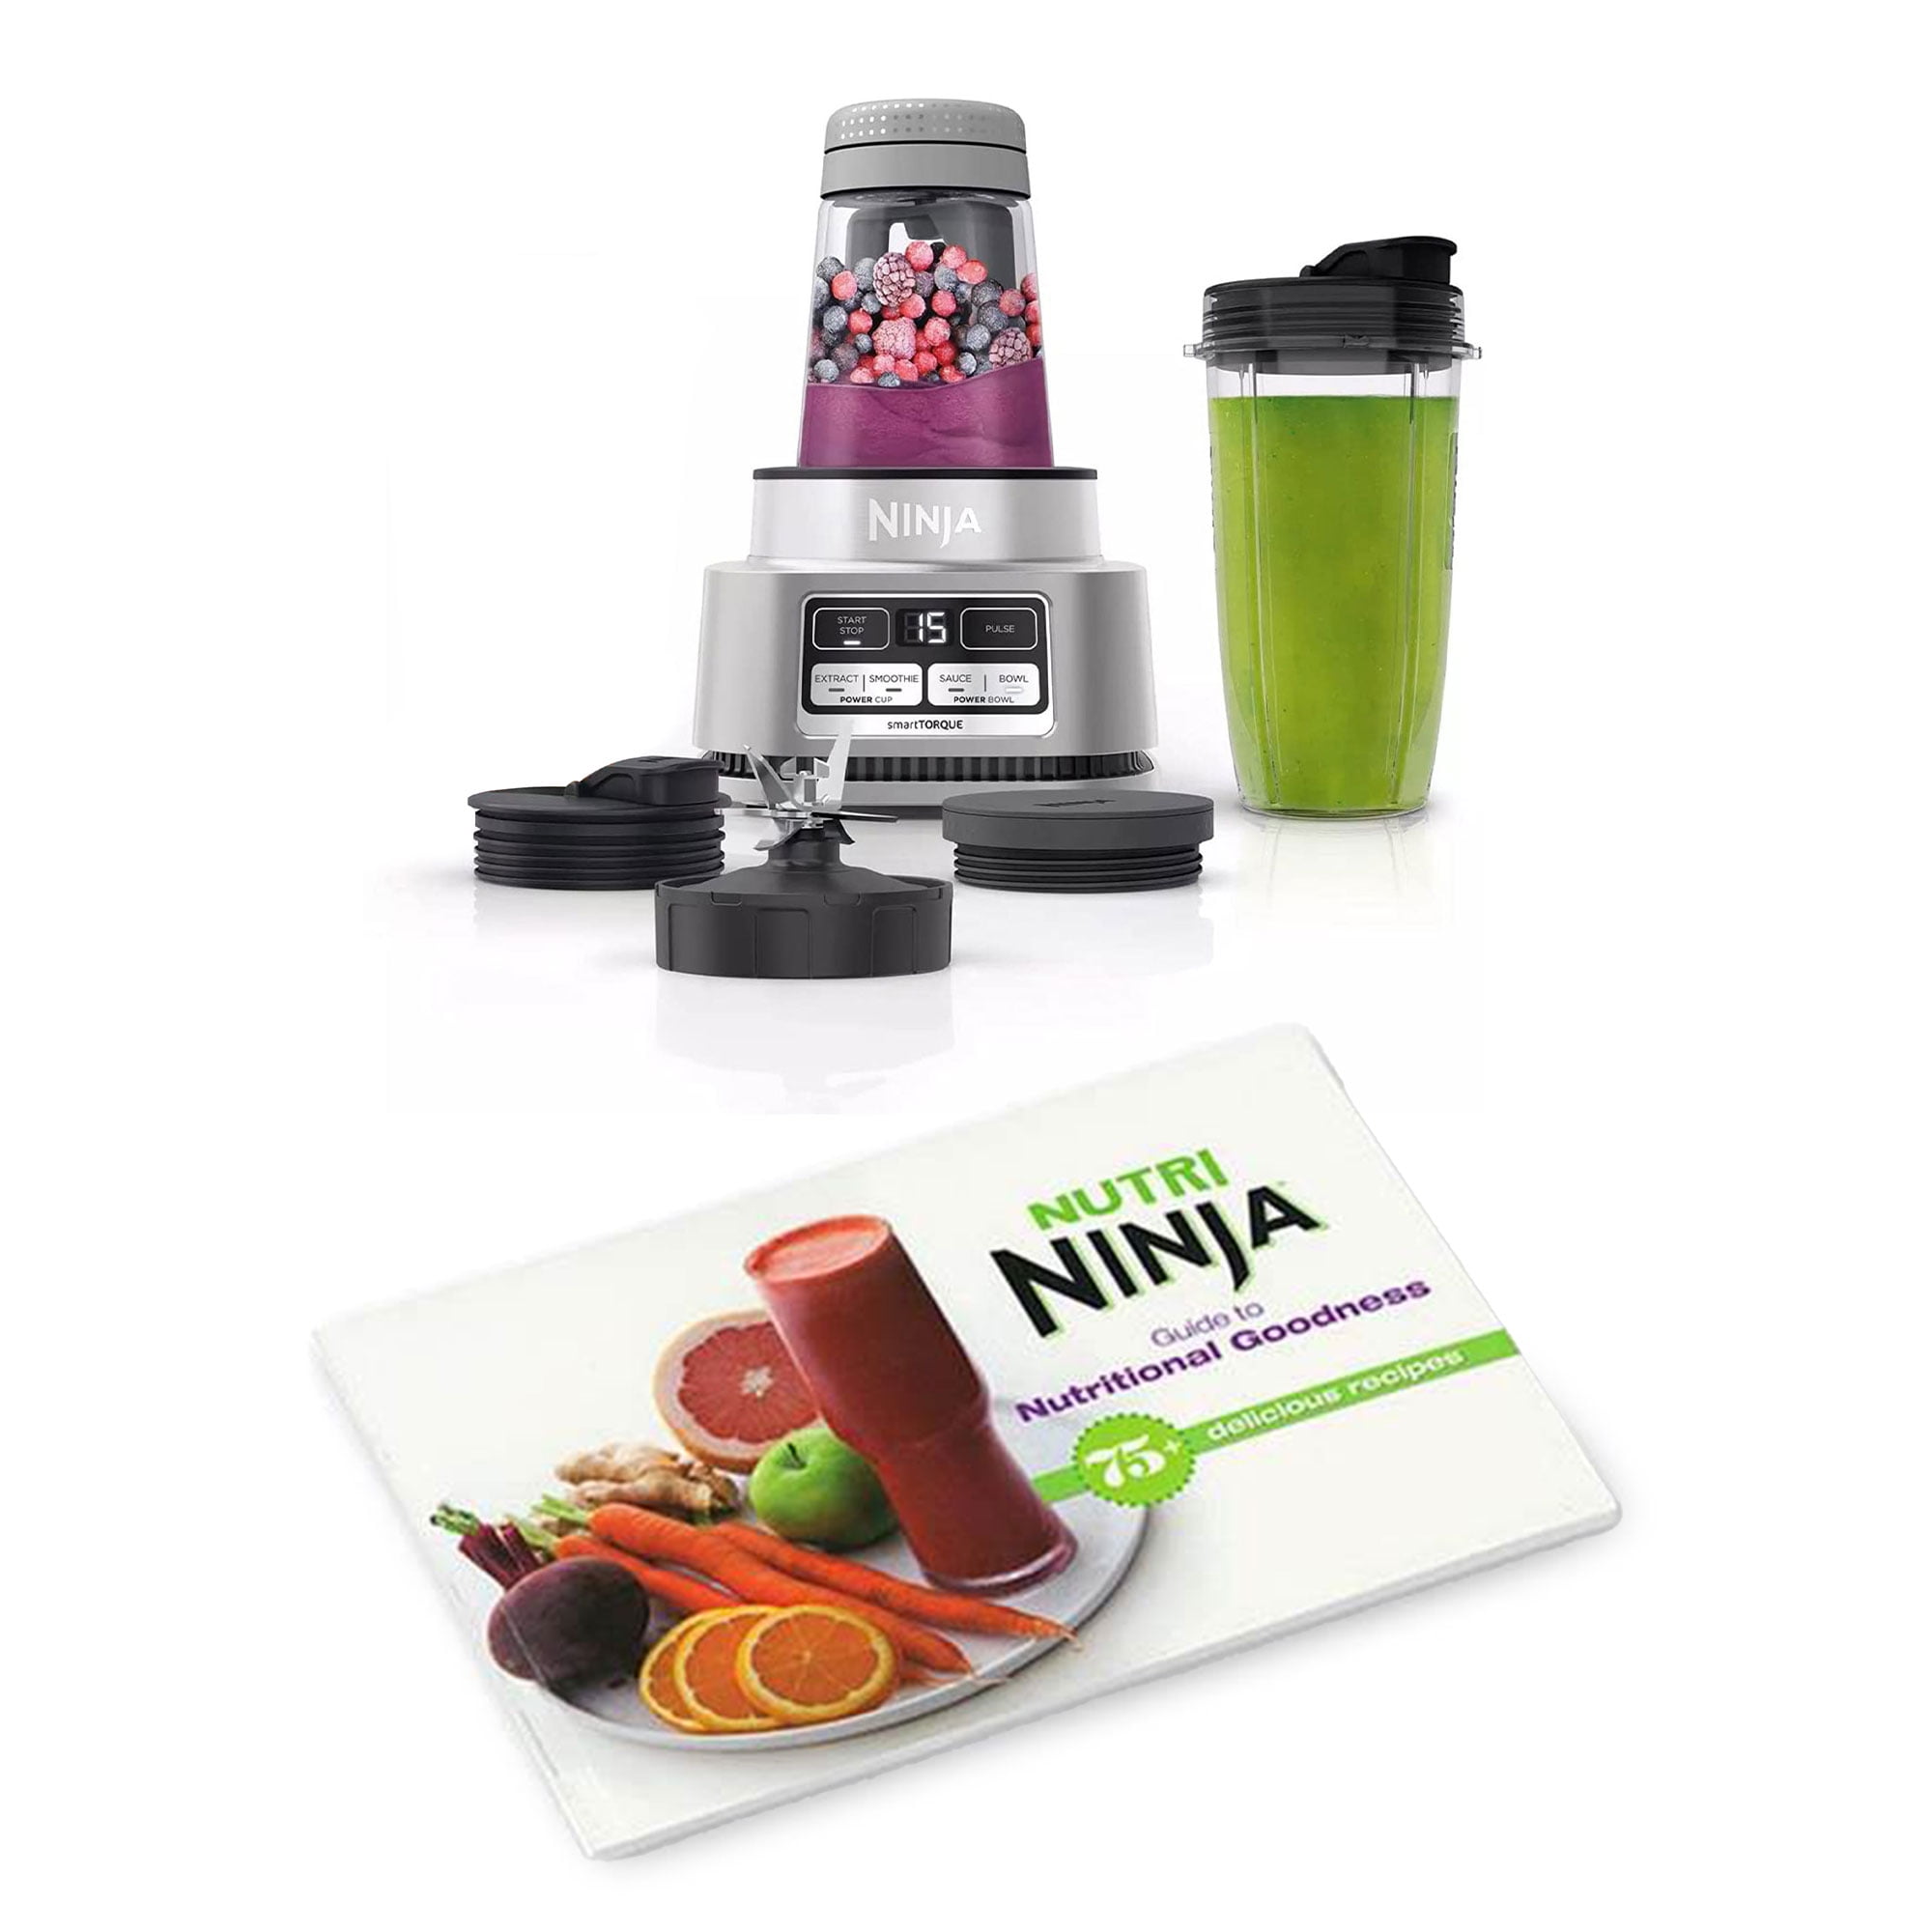 Ninja Foodi SS100 Smoothie Bowl Maker with Ninja Nutri Ninja Guide